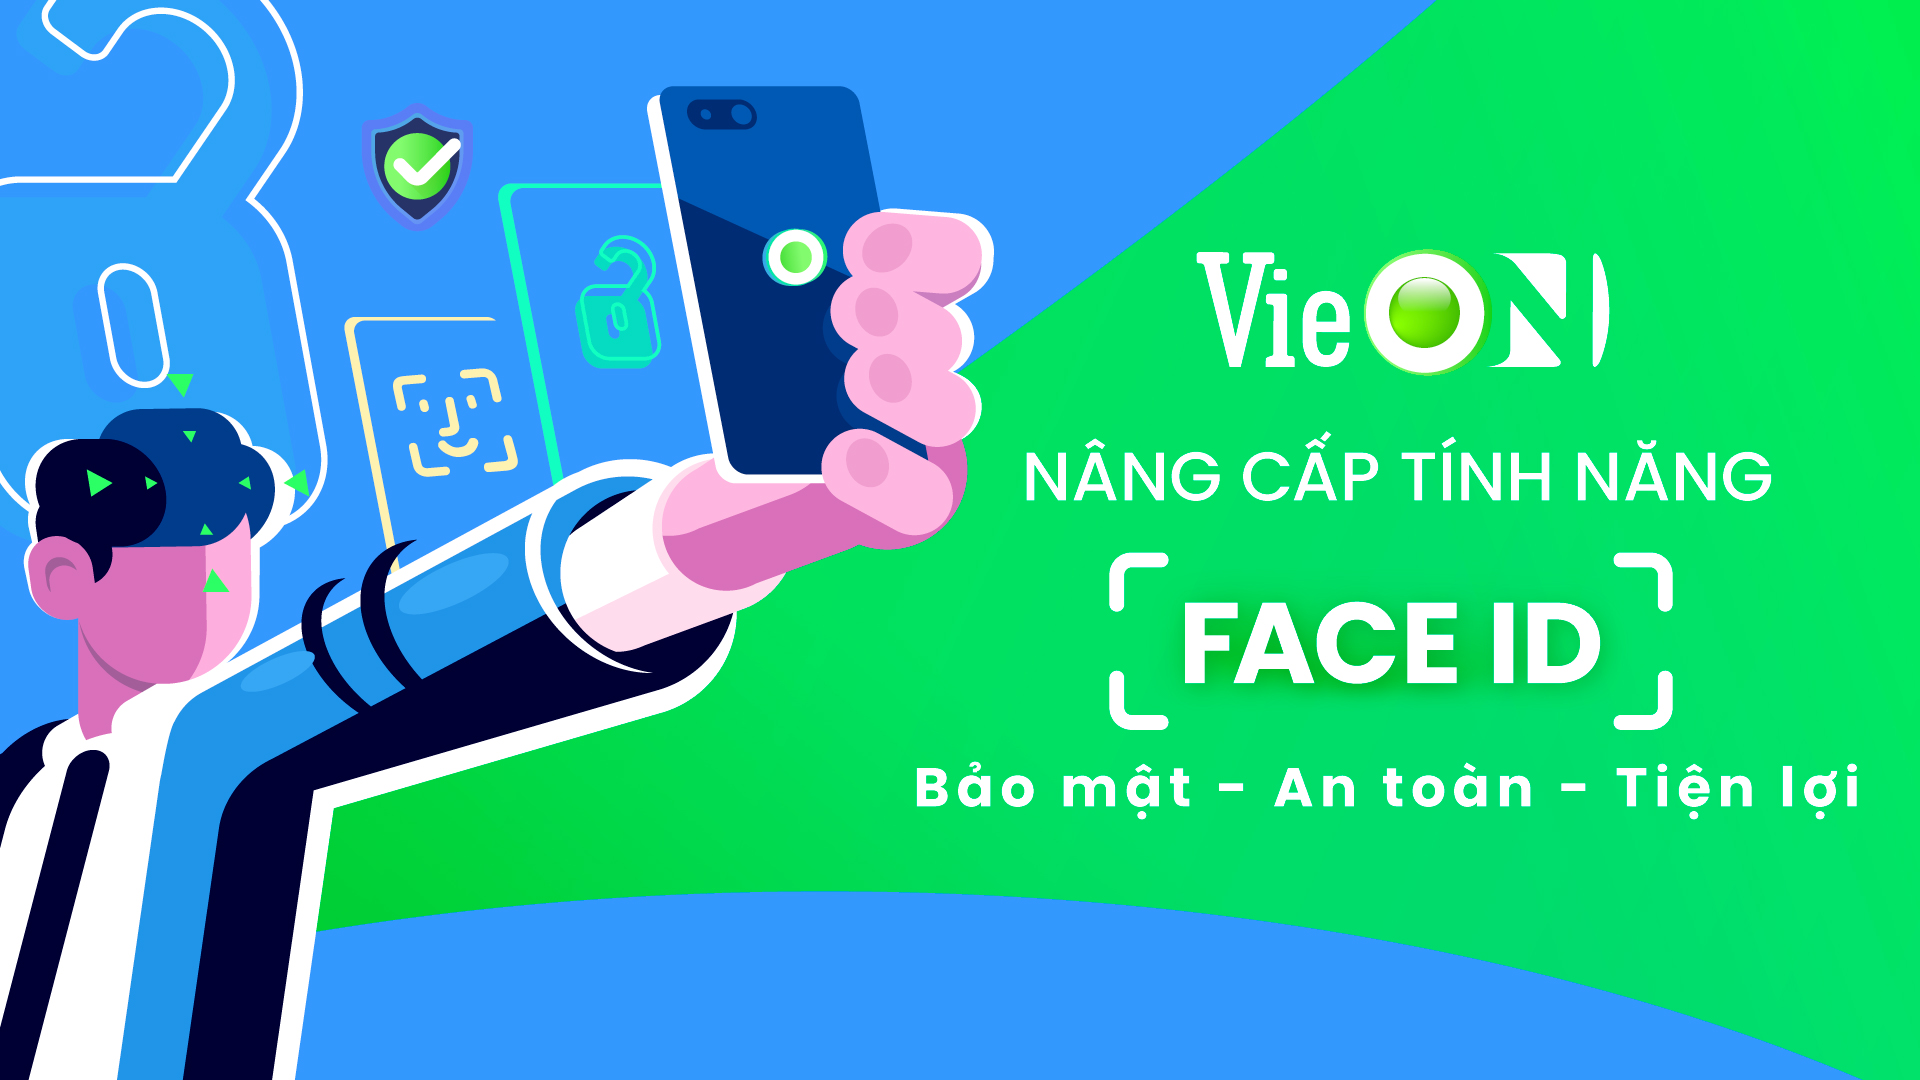 VieON – OTT Việt khẳng định vị thế trên đấu trường công nghệ thế giới - Ảnh 1.